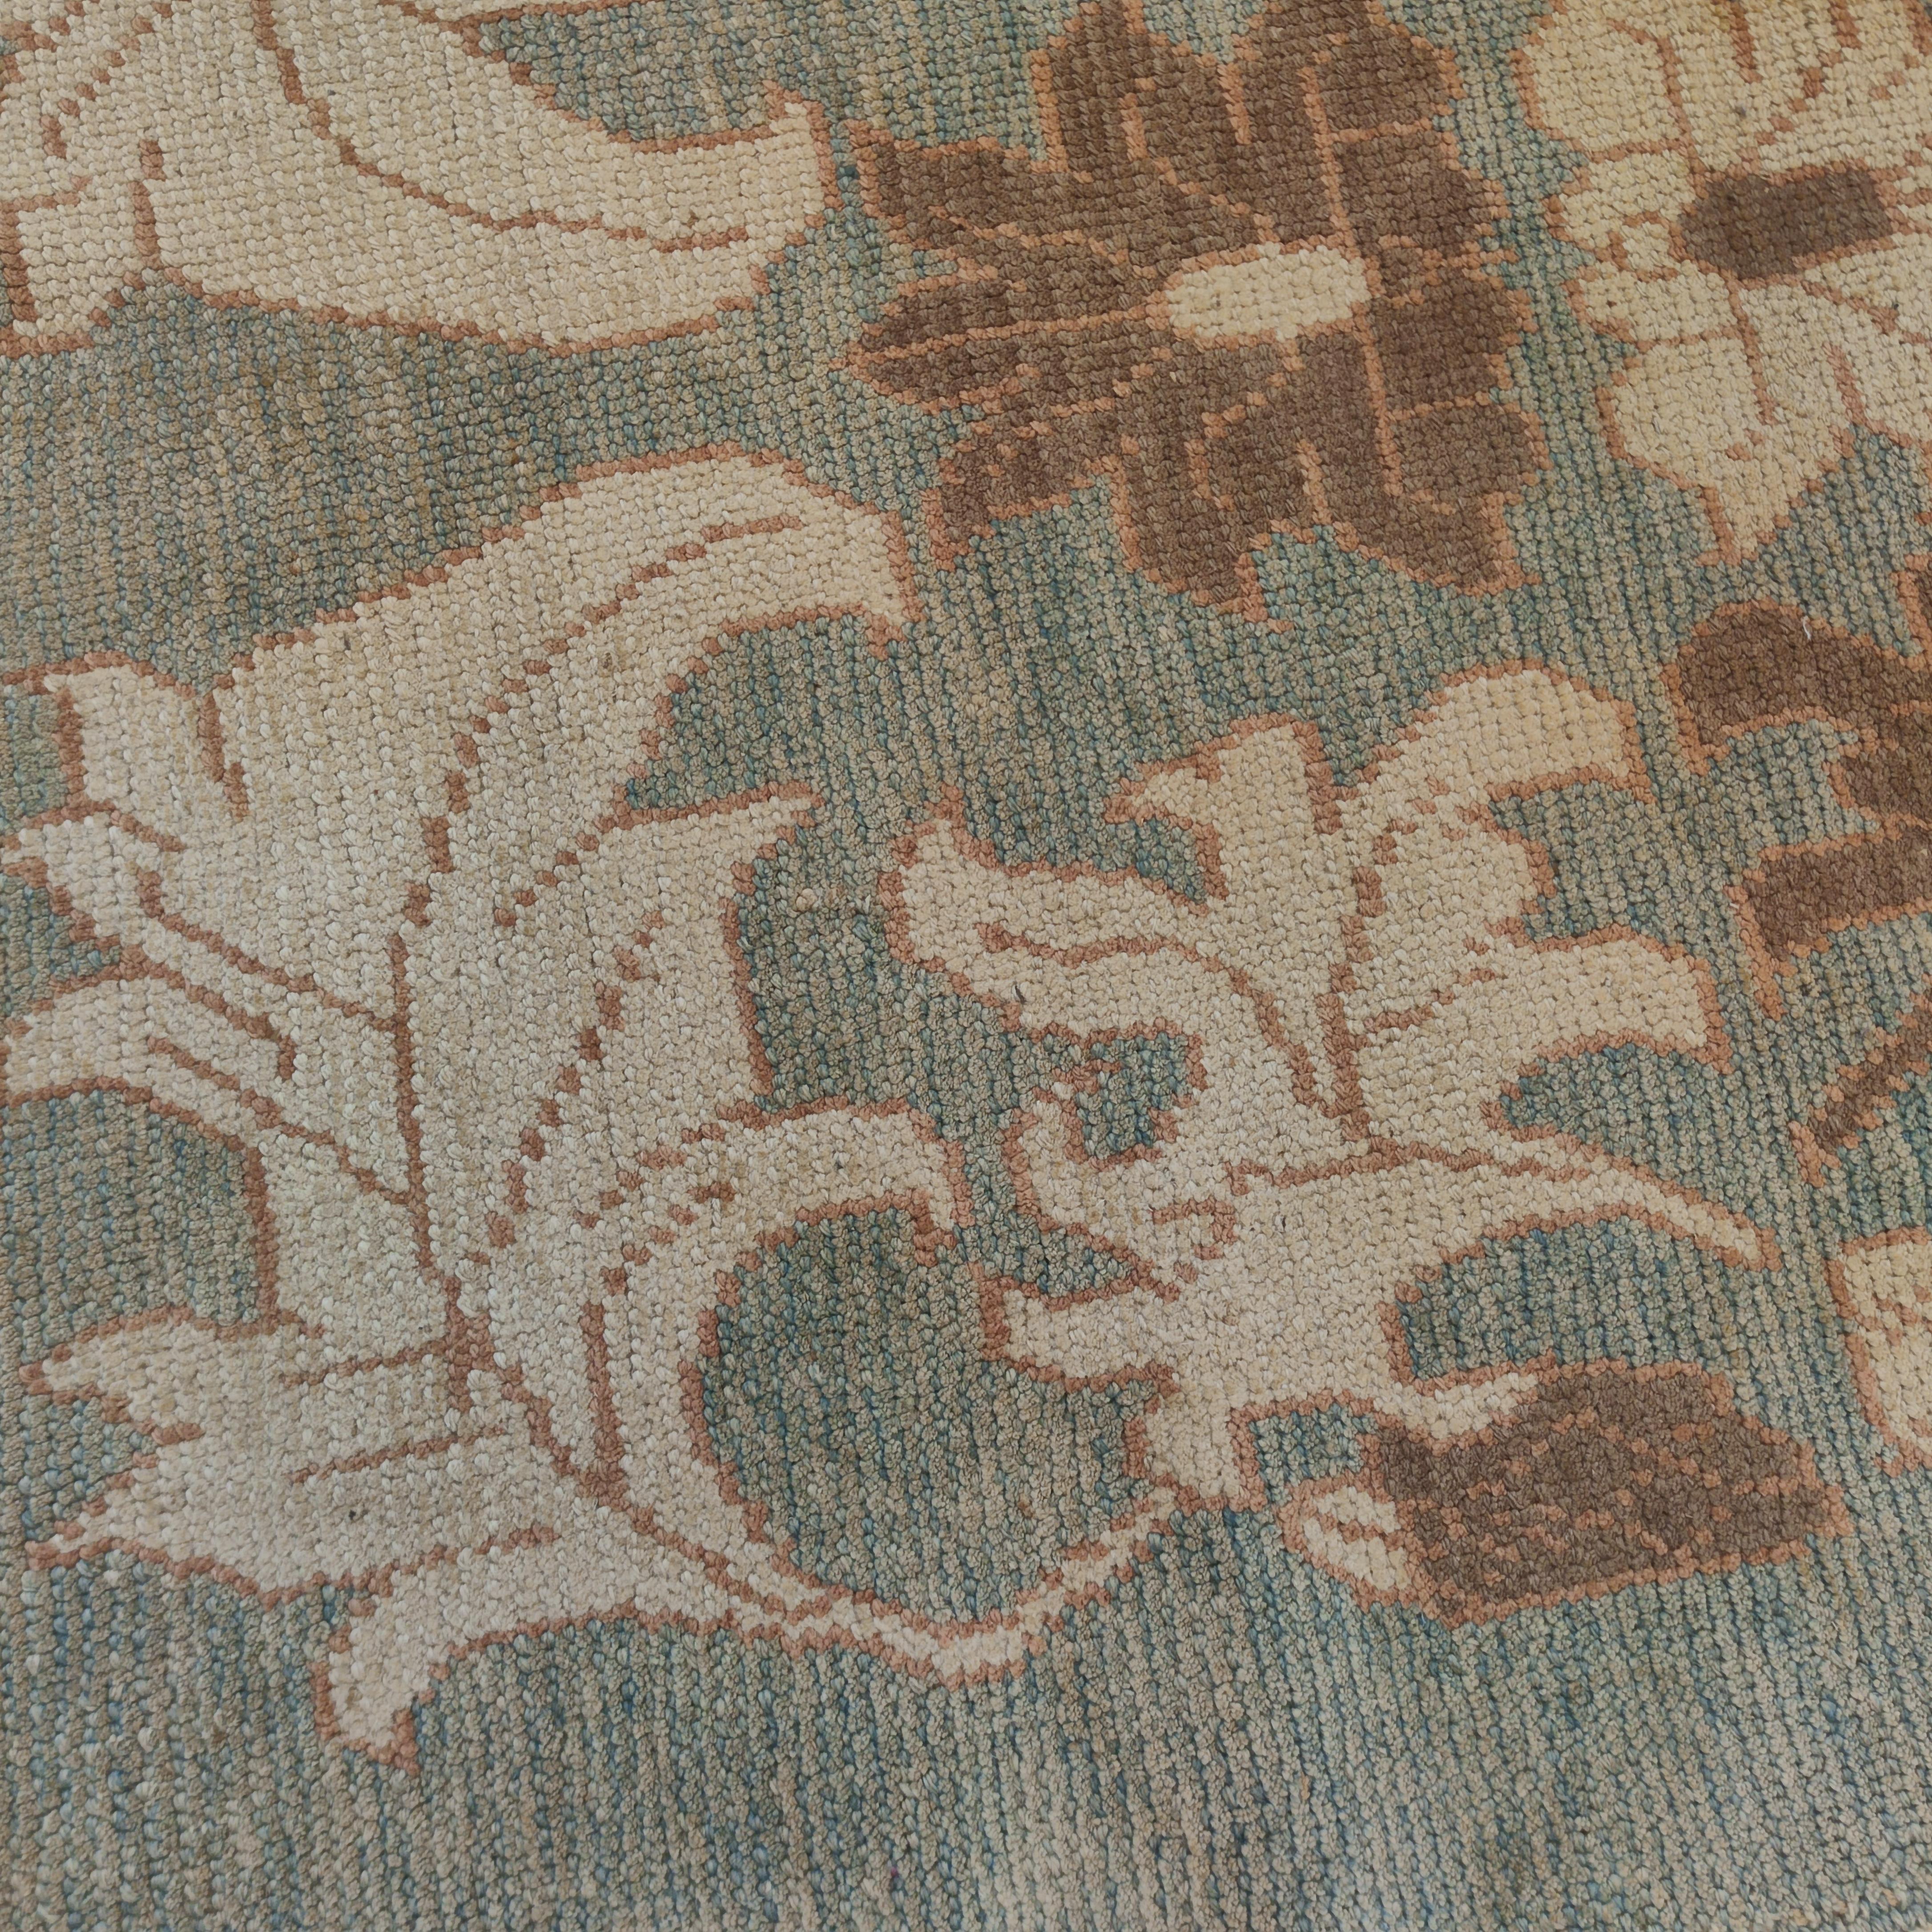 Ce tapis Oushak très raffiné se distingue par un magnifique fond bleu aqua, embelli par un motif surdimensionné composé d'une grande palmette centrale flanquée d'un réseau de feuilles finement dessinées en ivoire et brun clair. Les motifs de ce type